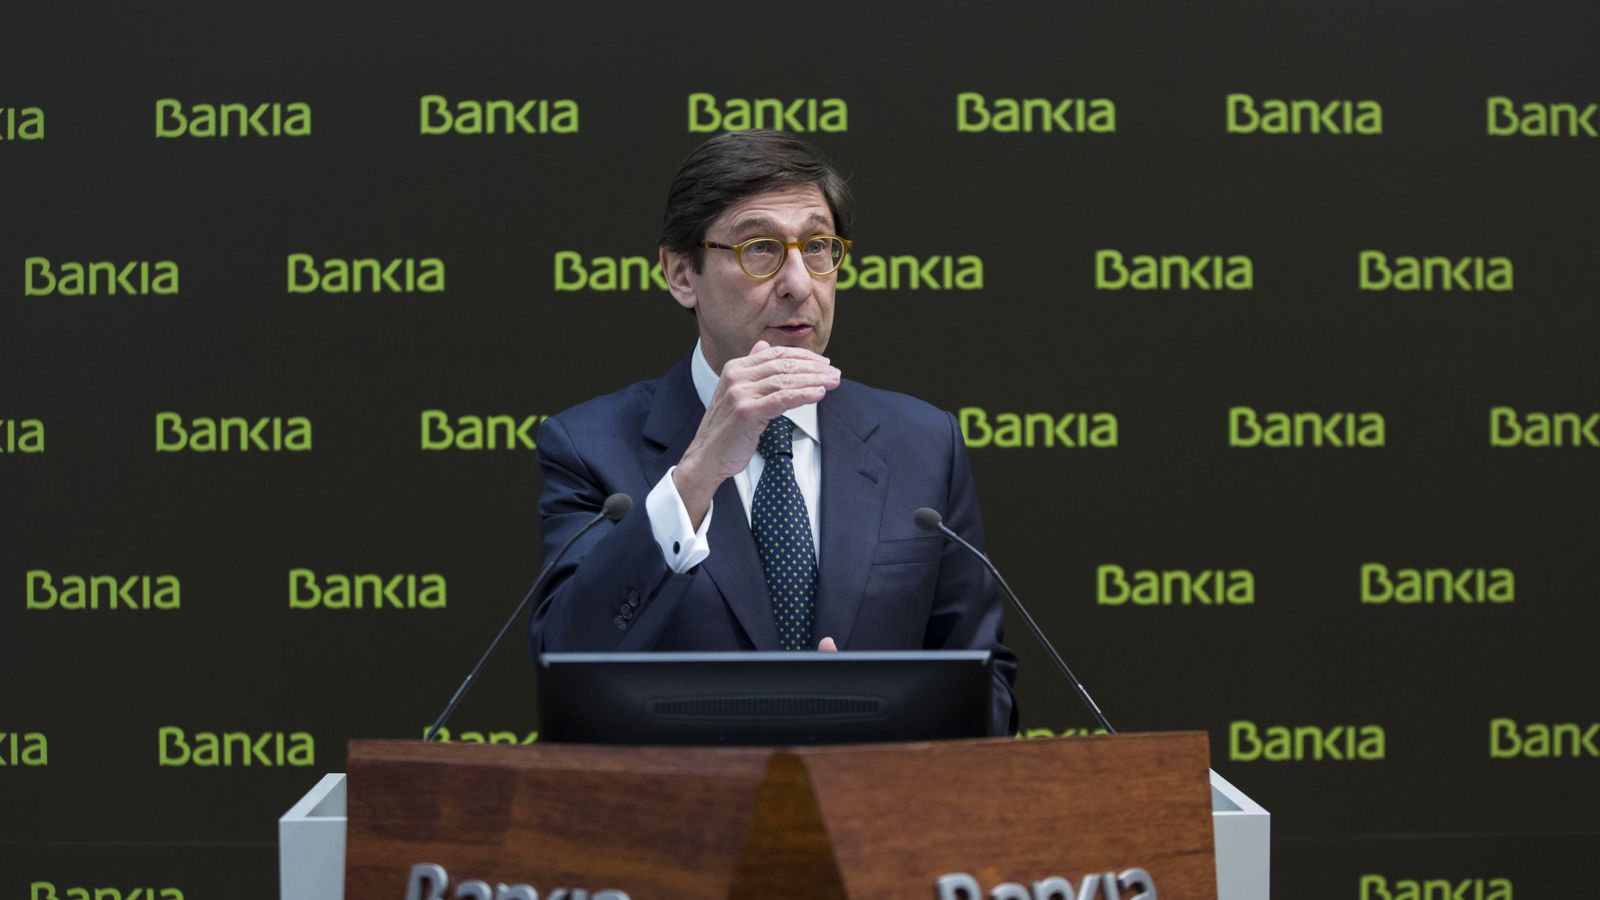 Foto: El presidente de Bankia, José Ignacio Goirigolzarri, durante la presentación de los resultados anuales de la entidad. / EFE